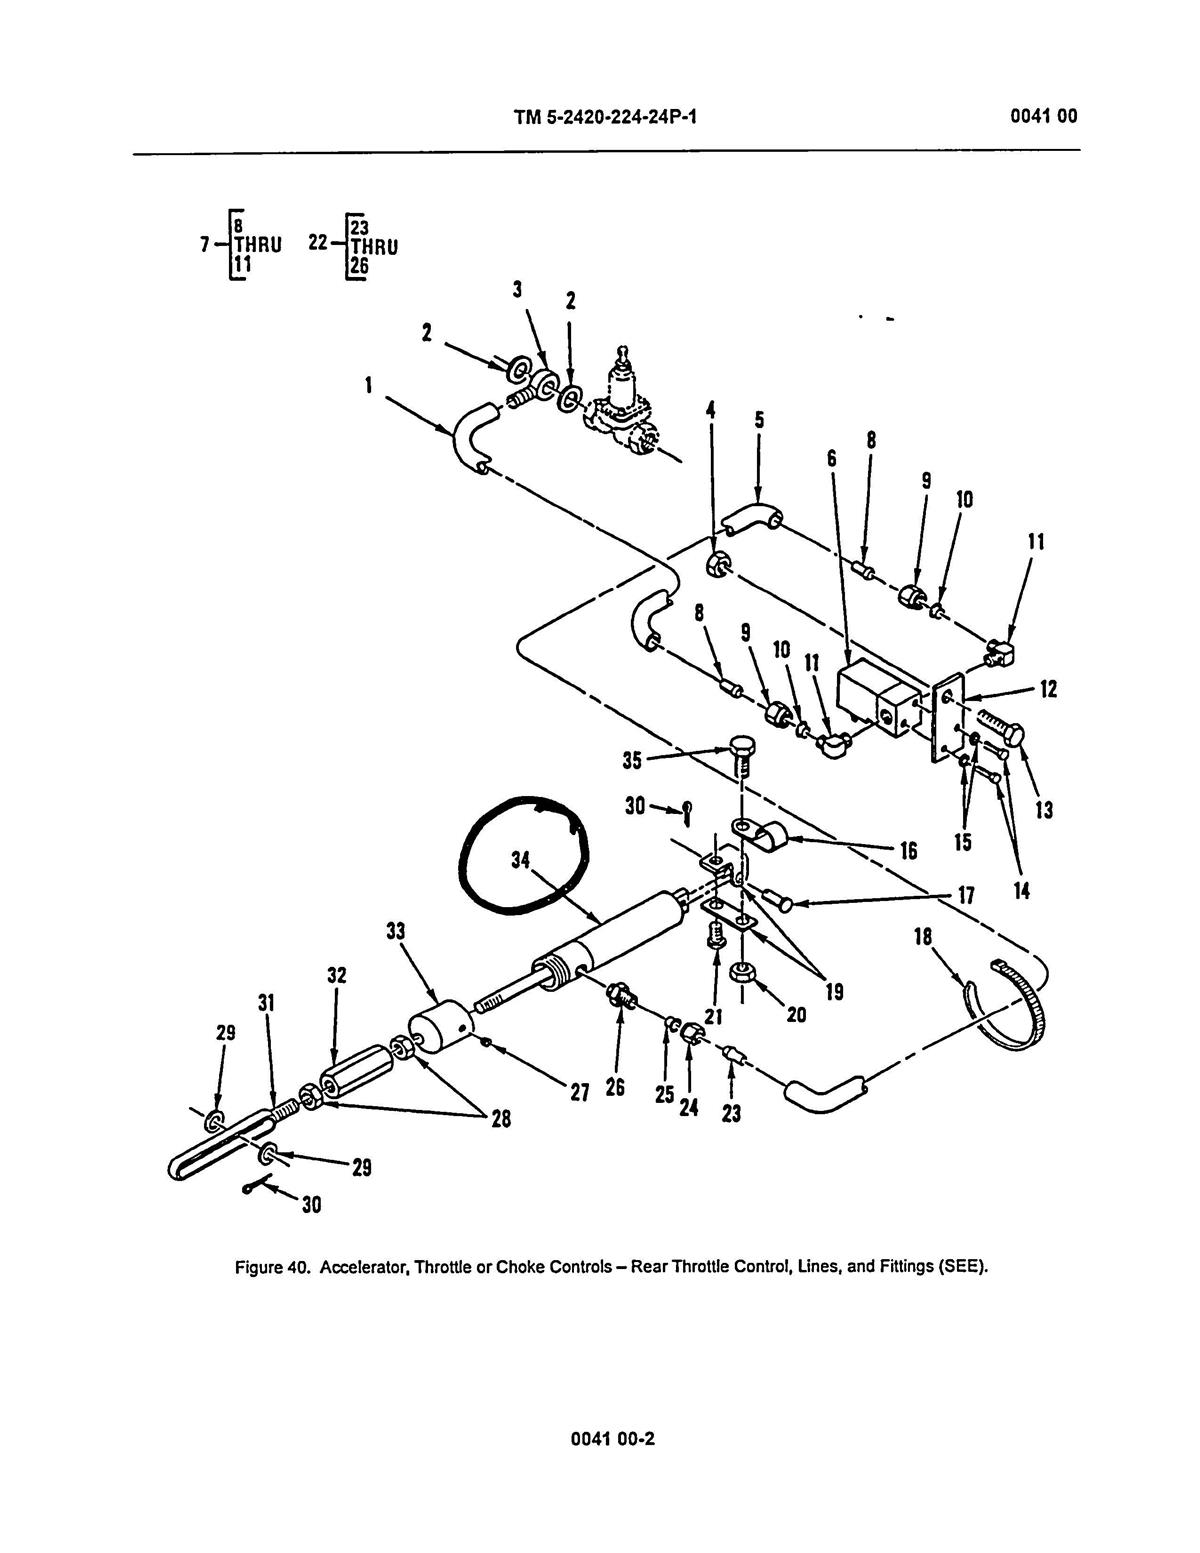 SP-1685 | 2590-01-242-3052 Hydraulic cylinder assembly diagram.jpg